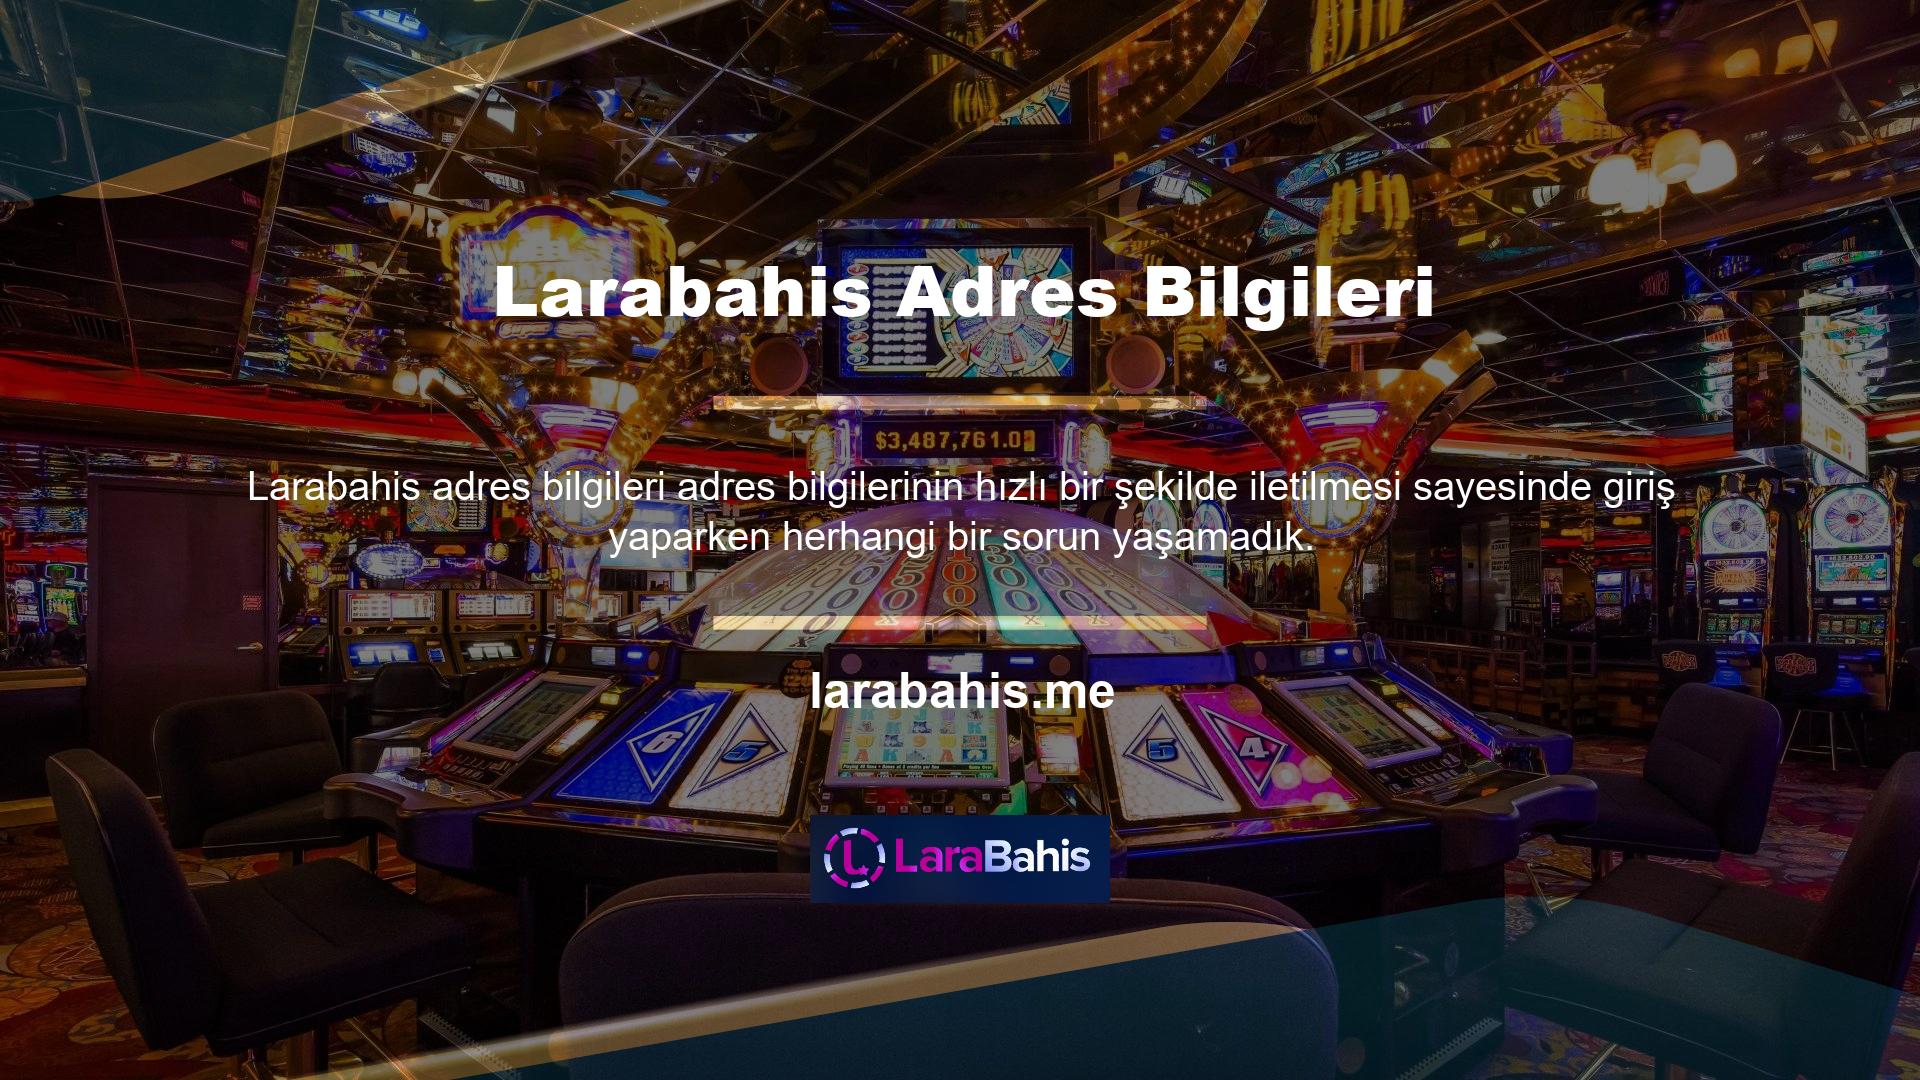 Mevcut Larabahis adresiyle bir web sitesini ziyaret etmek isteyen müşterilerin sosyal medya hesaplarını takip edeceğini düşünüyoruz